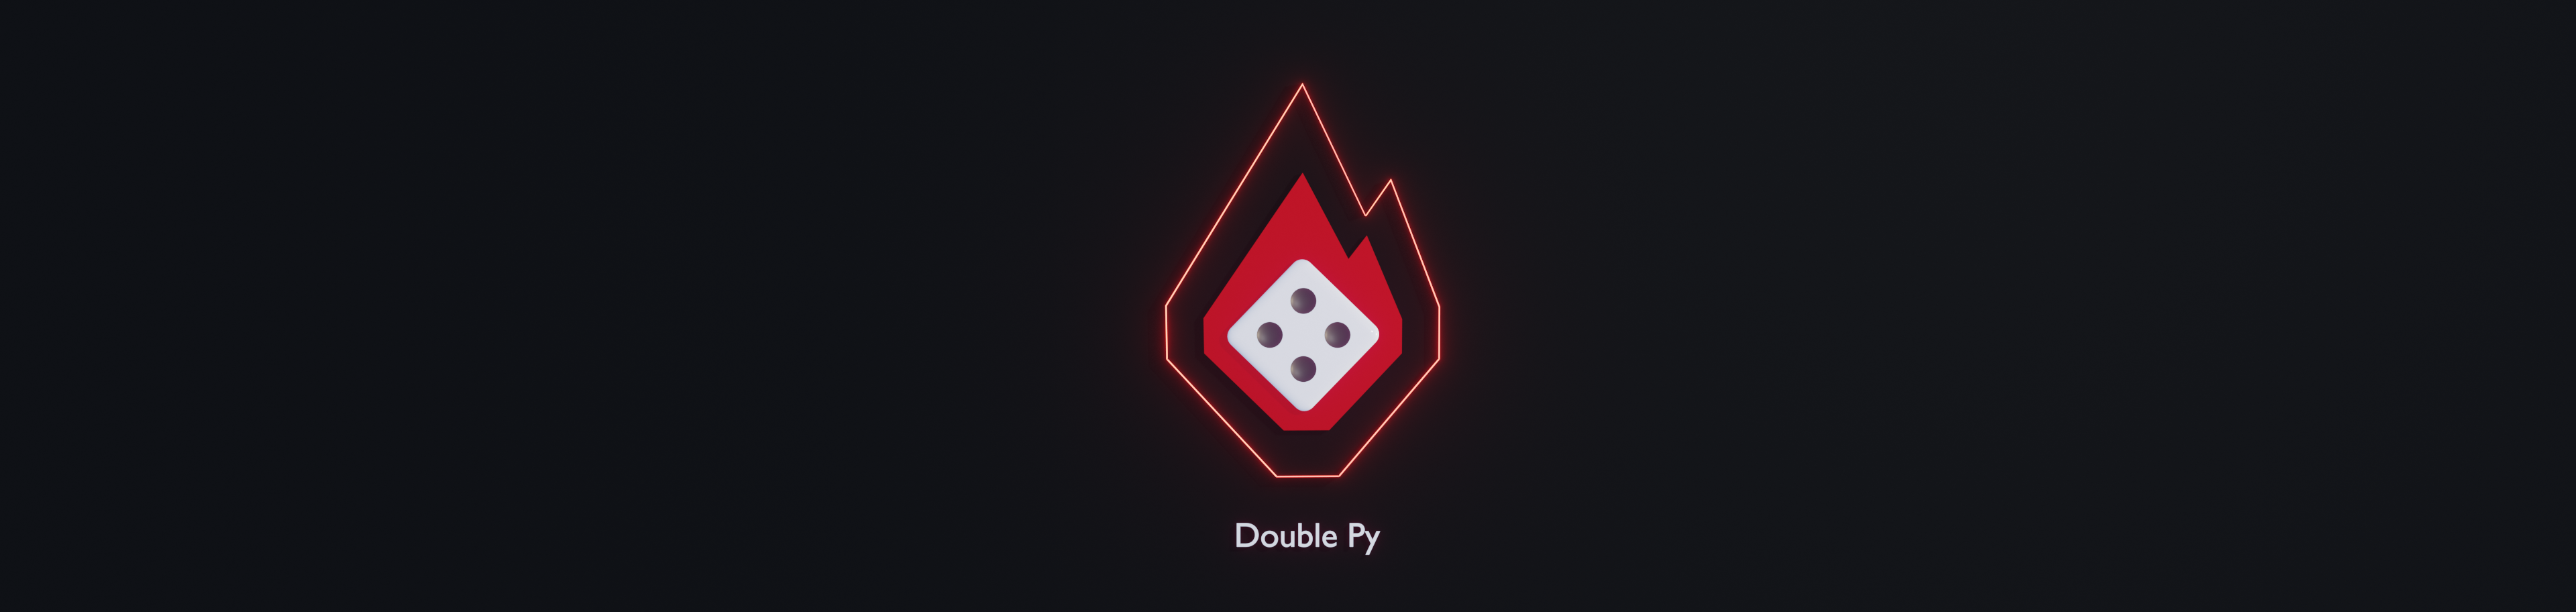 Double Py